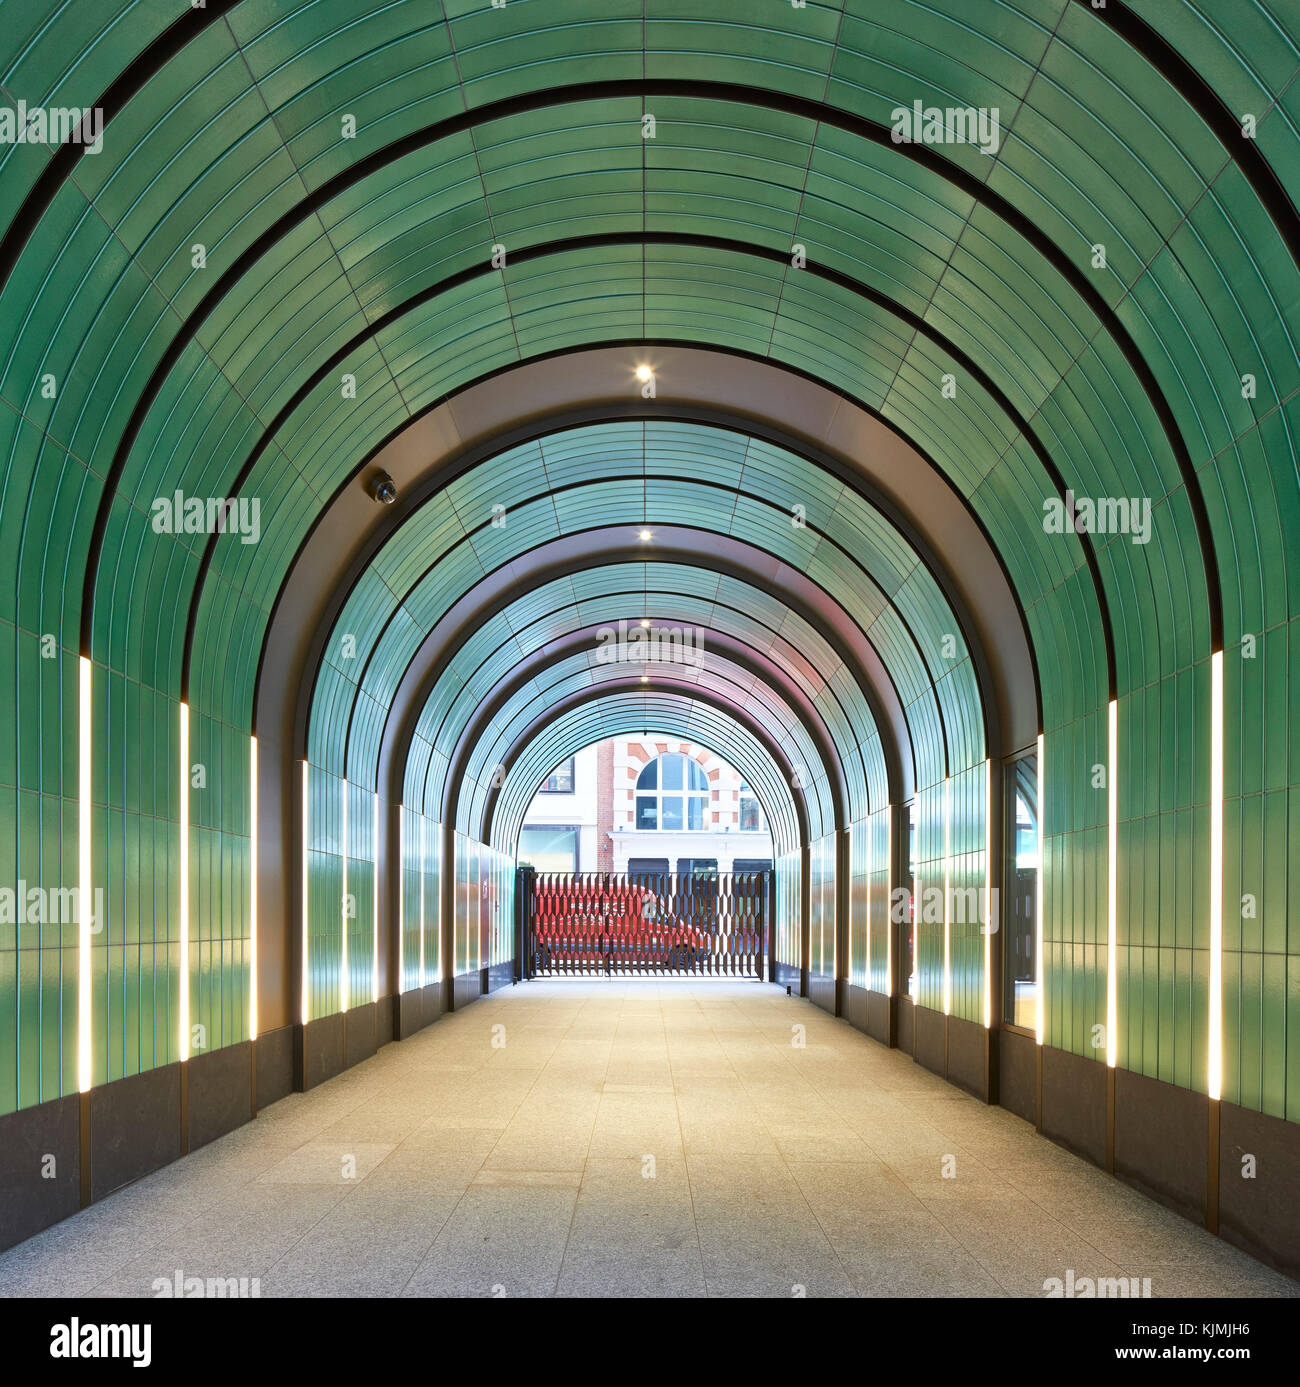 In Keramik verkleideten Eingang Tunnel. Rathbone Square, London, Vereinigtes Königreich. Architekt: Machen Ltd, 2017. Stockfoto